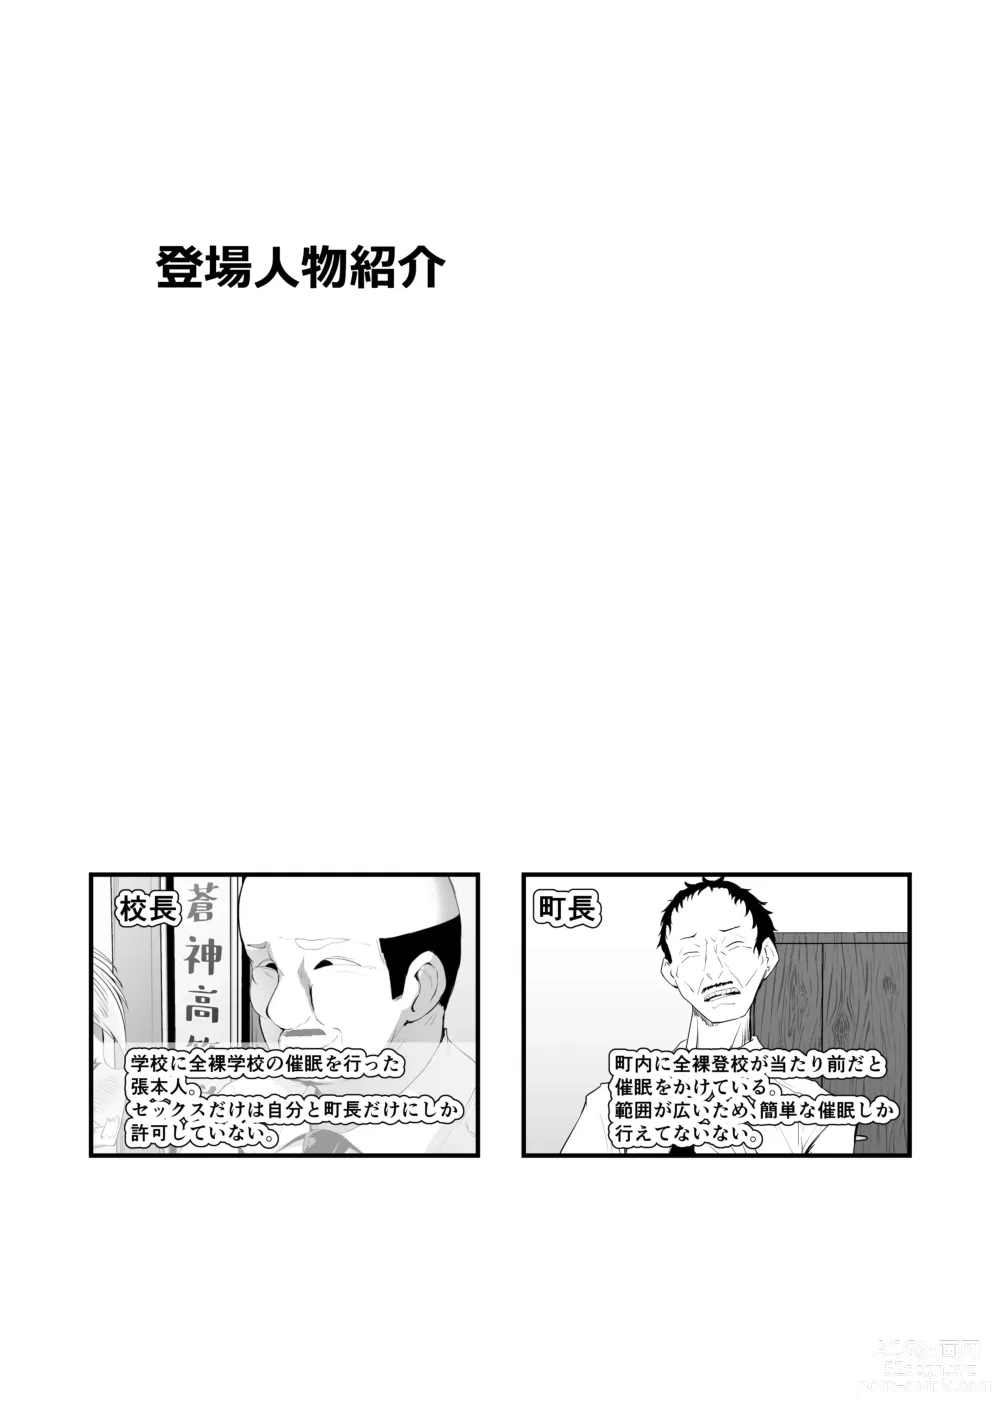 Page 25 of doujinshi Nenkan V-style 12 Gatsu Go